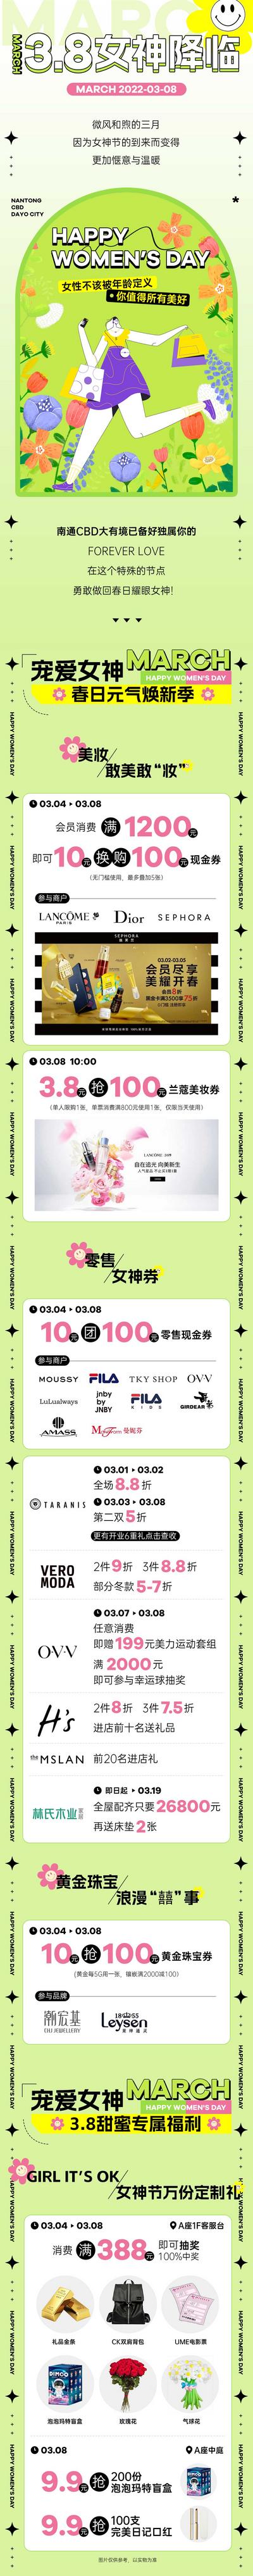 南门网 专题设计 长图 公历节日 妇女节 女神节 商场 促销 手绘 清新